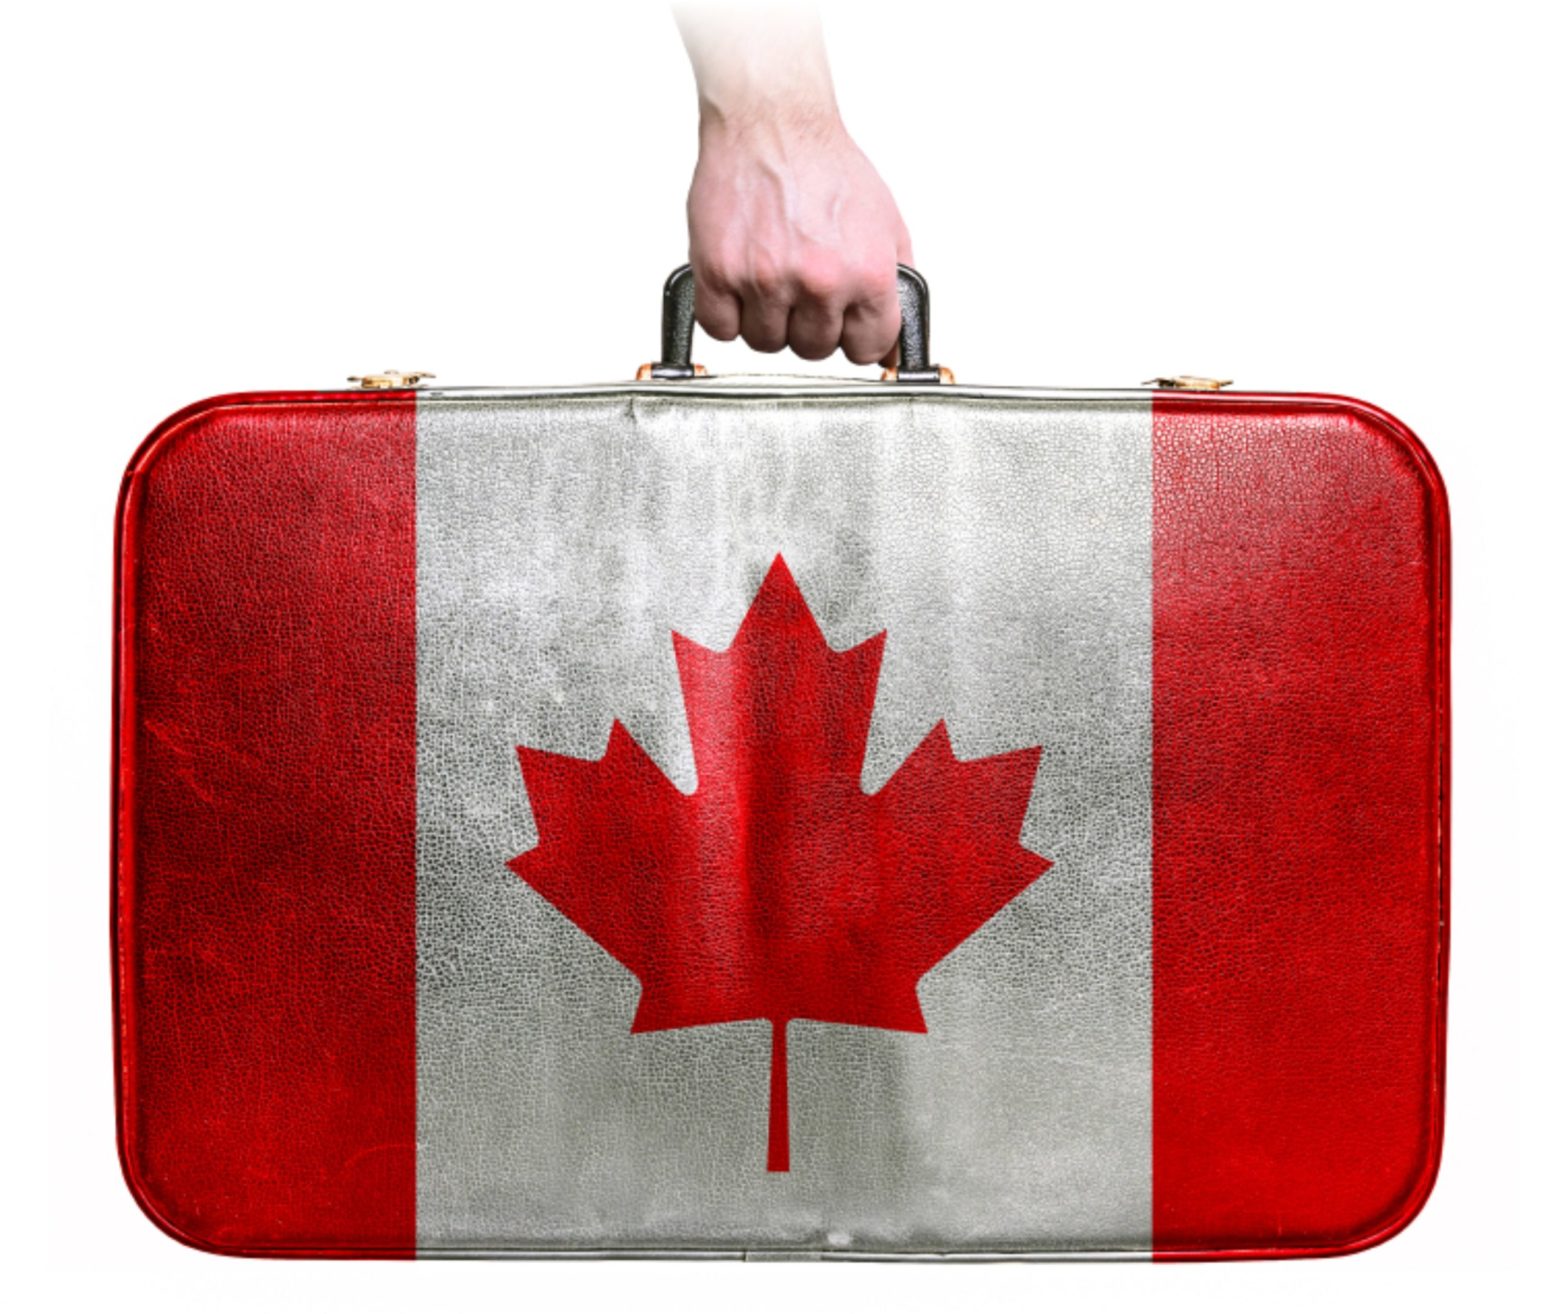 Где заказать перевозку вещей в Канаду?